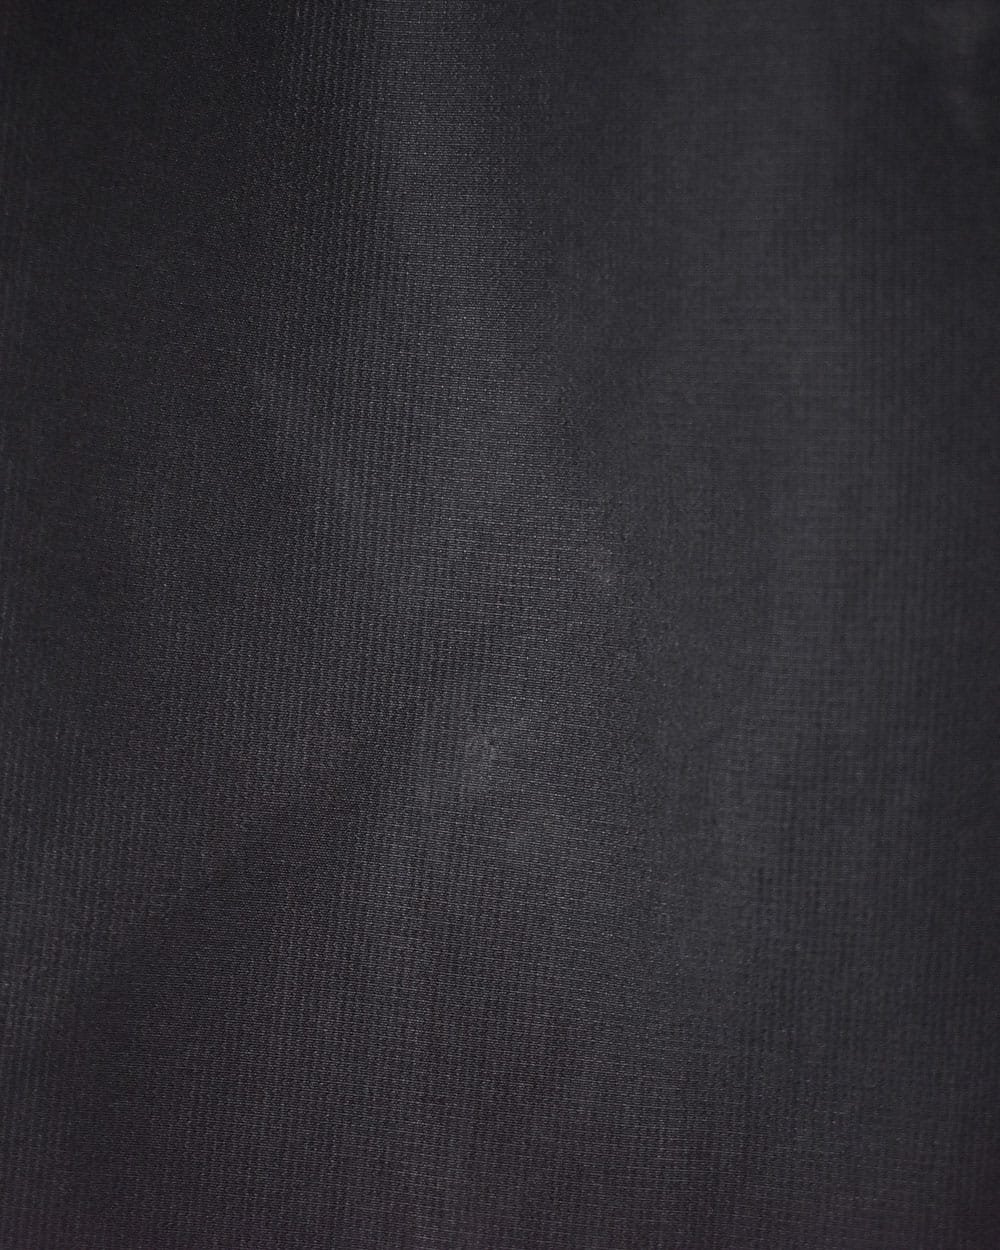 Black Nike Air Mesh Shorts - Medium